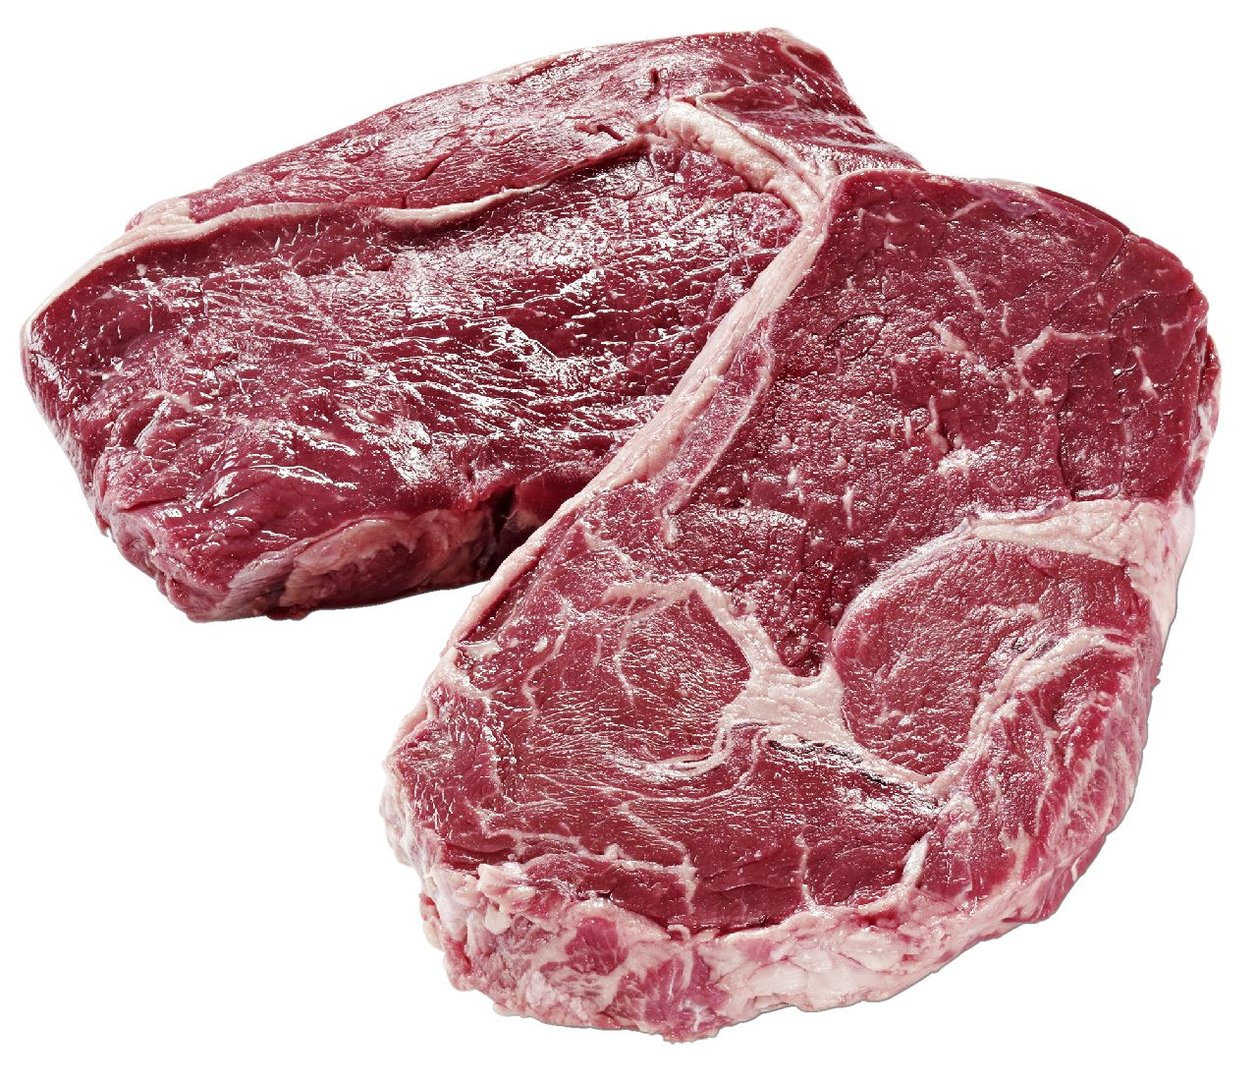 METRO Chef - Argentinische Rinder-Entrecote, 12 Stück Portion, gekühlt ca. 2,6 kg